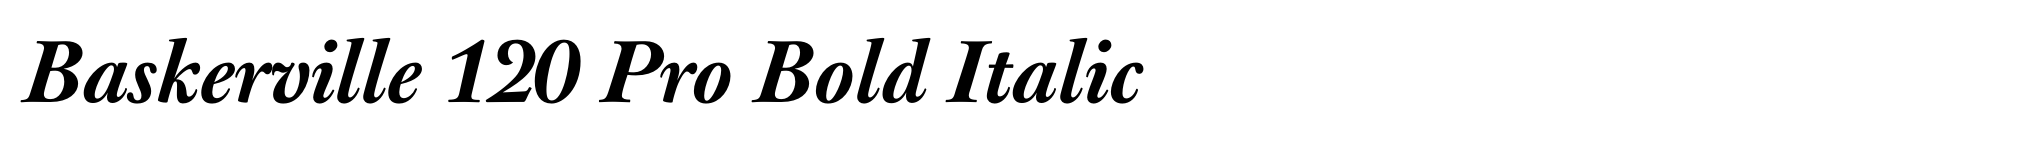 Baskerville 120 Pro Bold Italic image